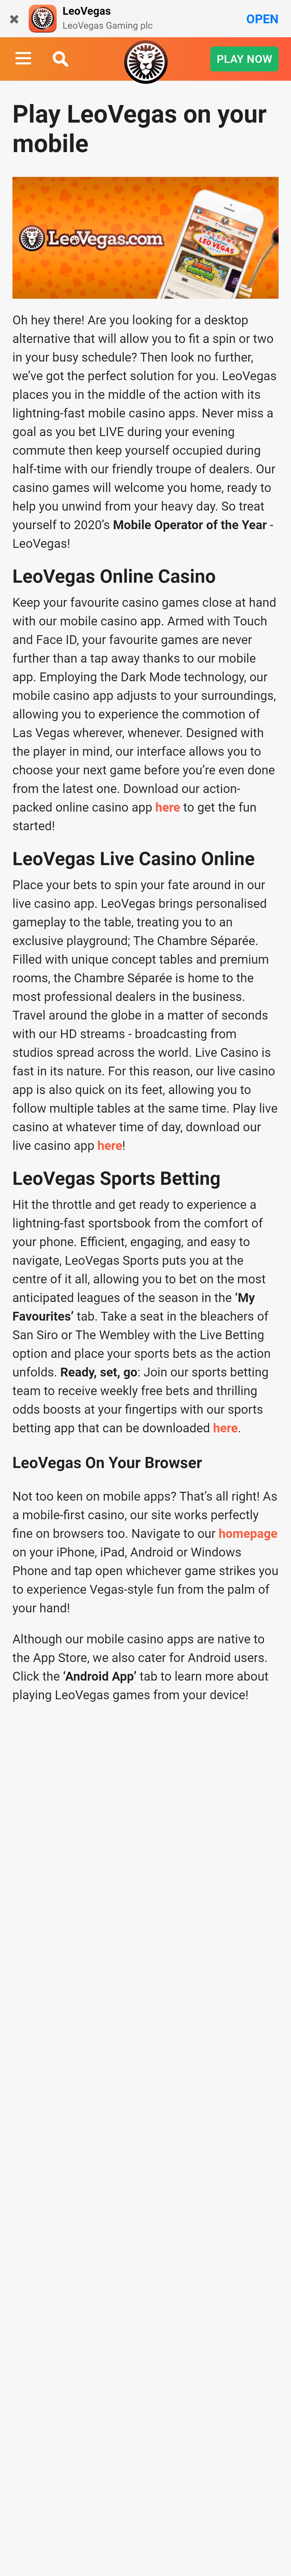 Leo Vegas Casino Mobile App Review